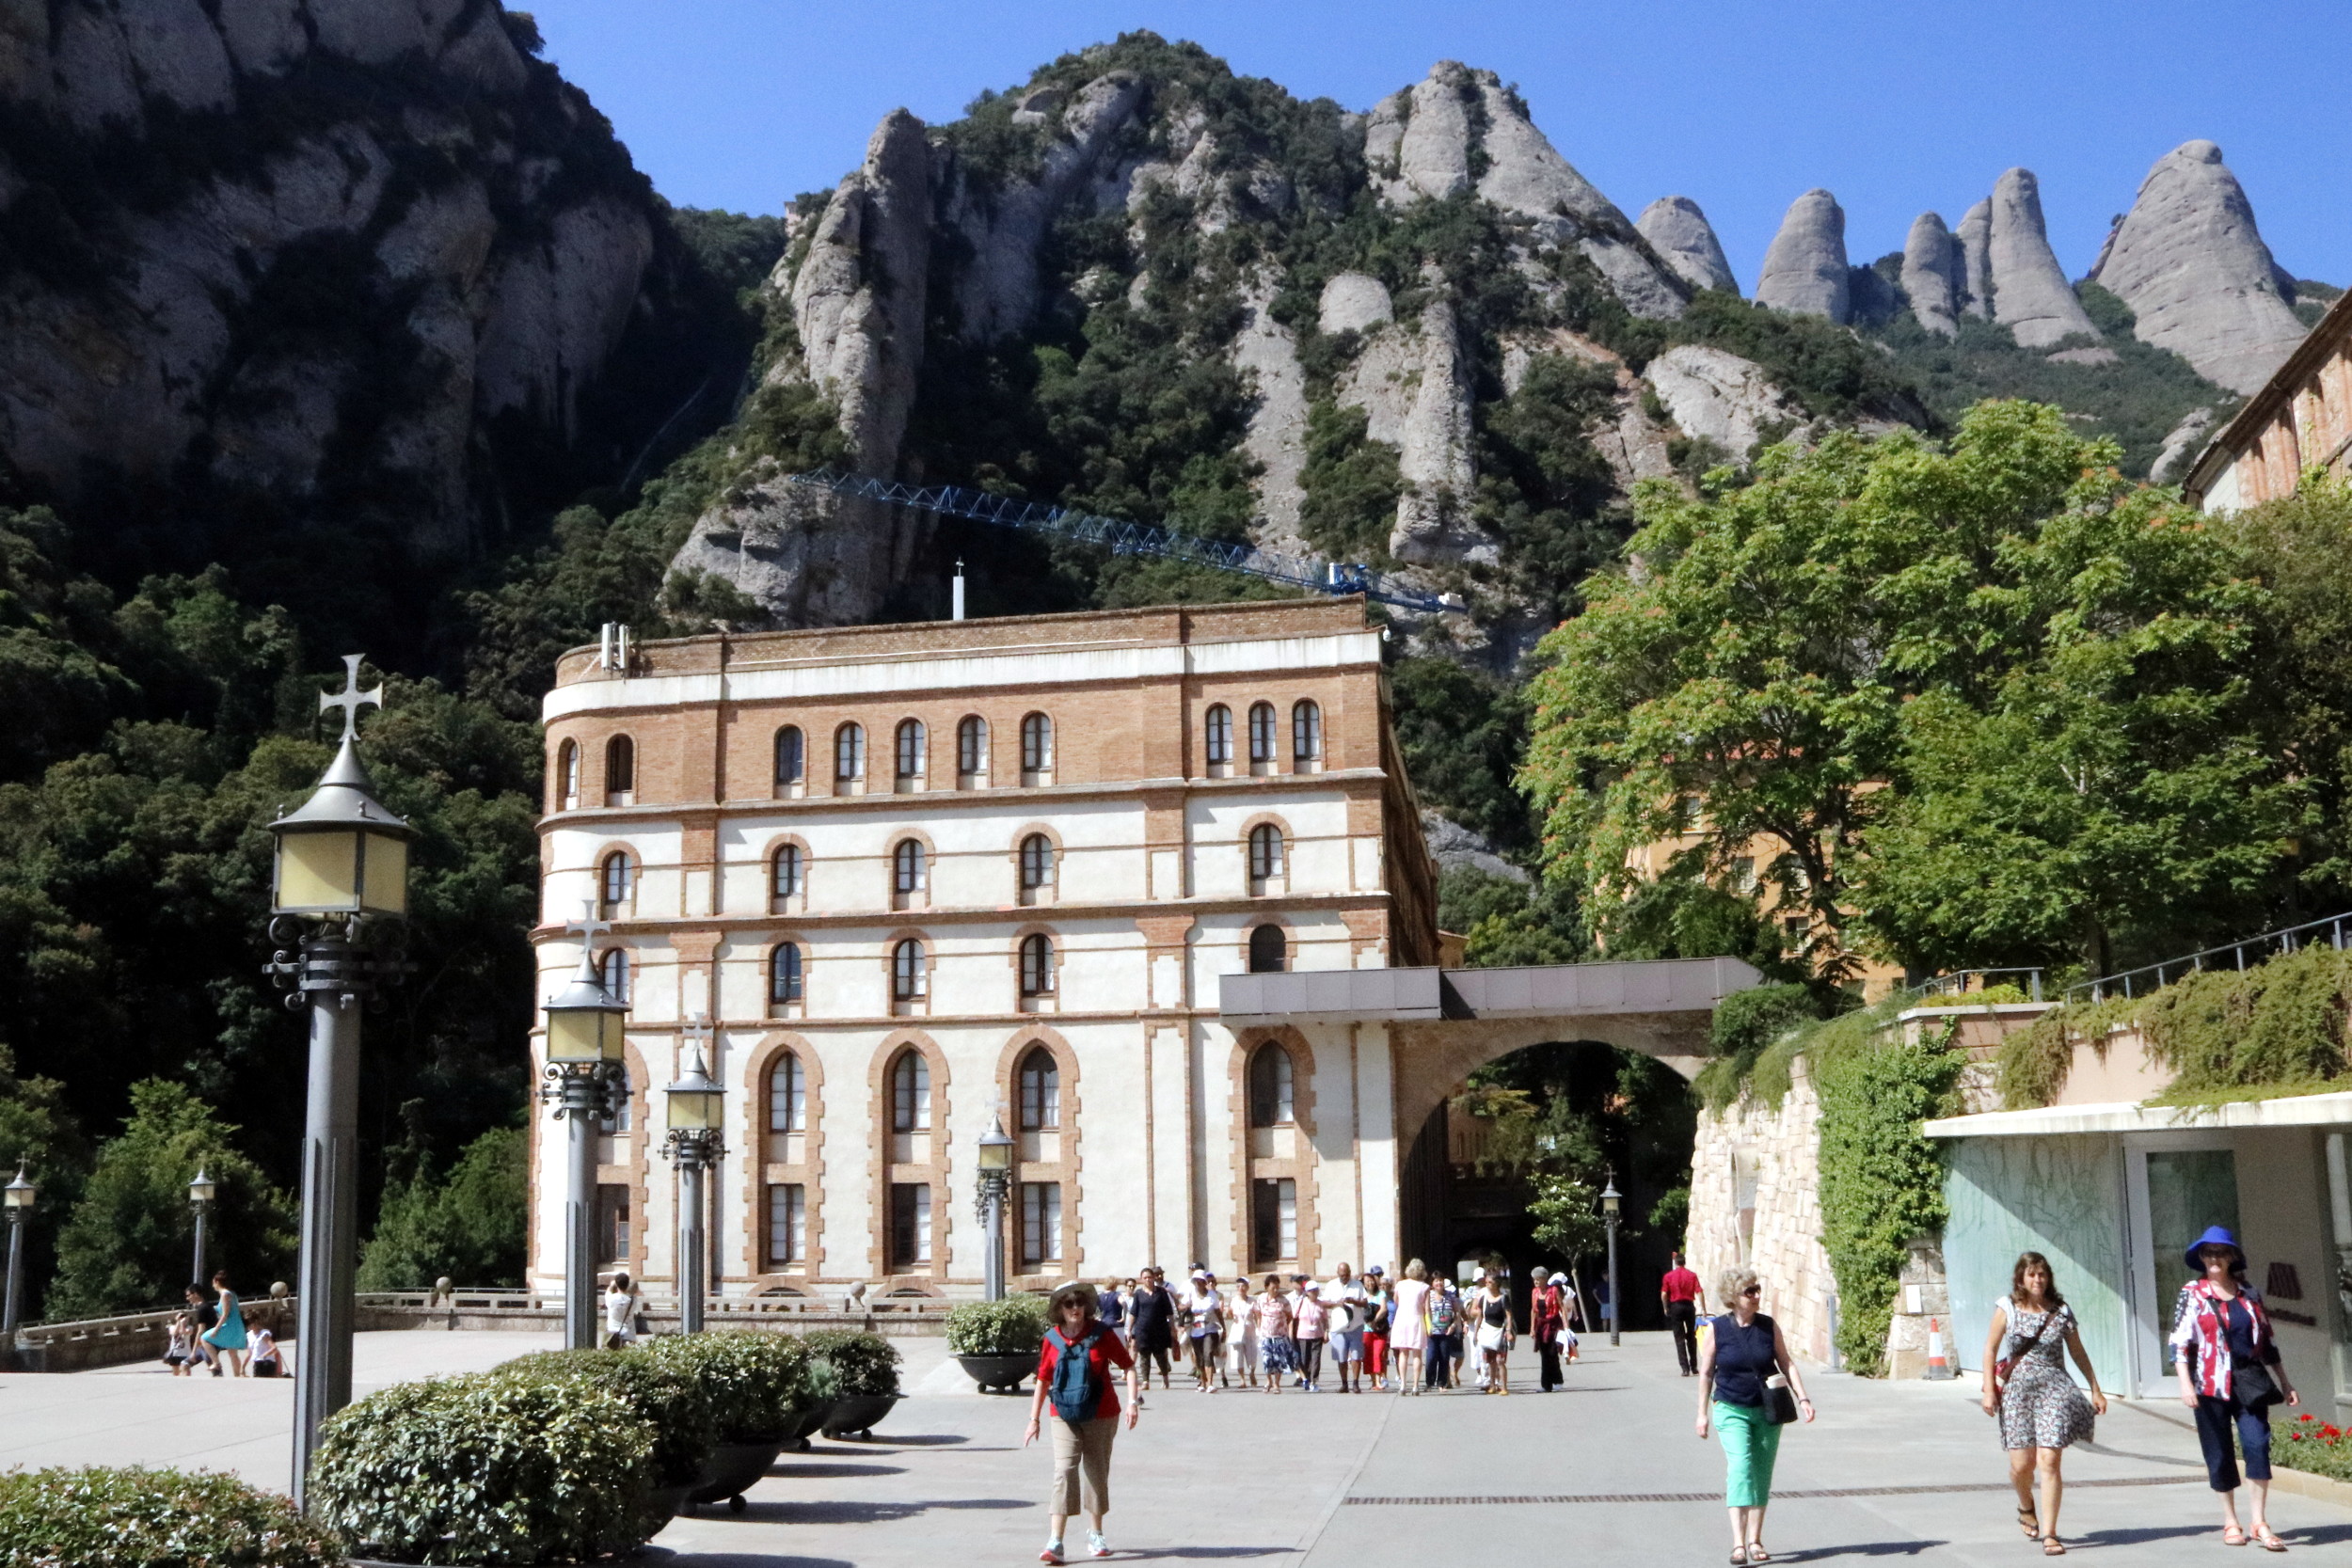 La Casa de Palau with Montserrat mountain in background